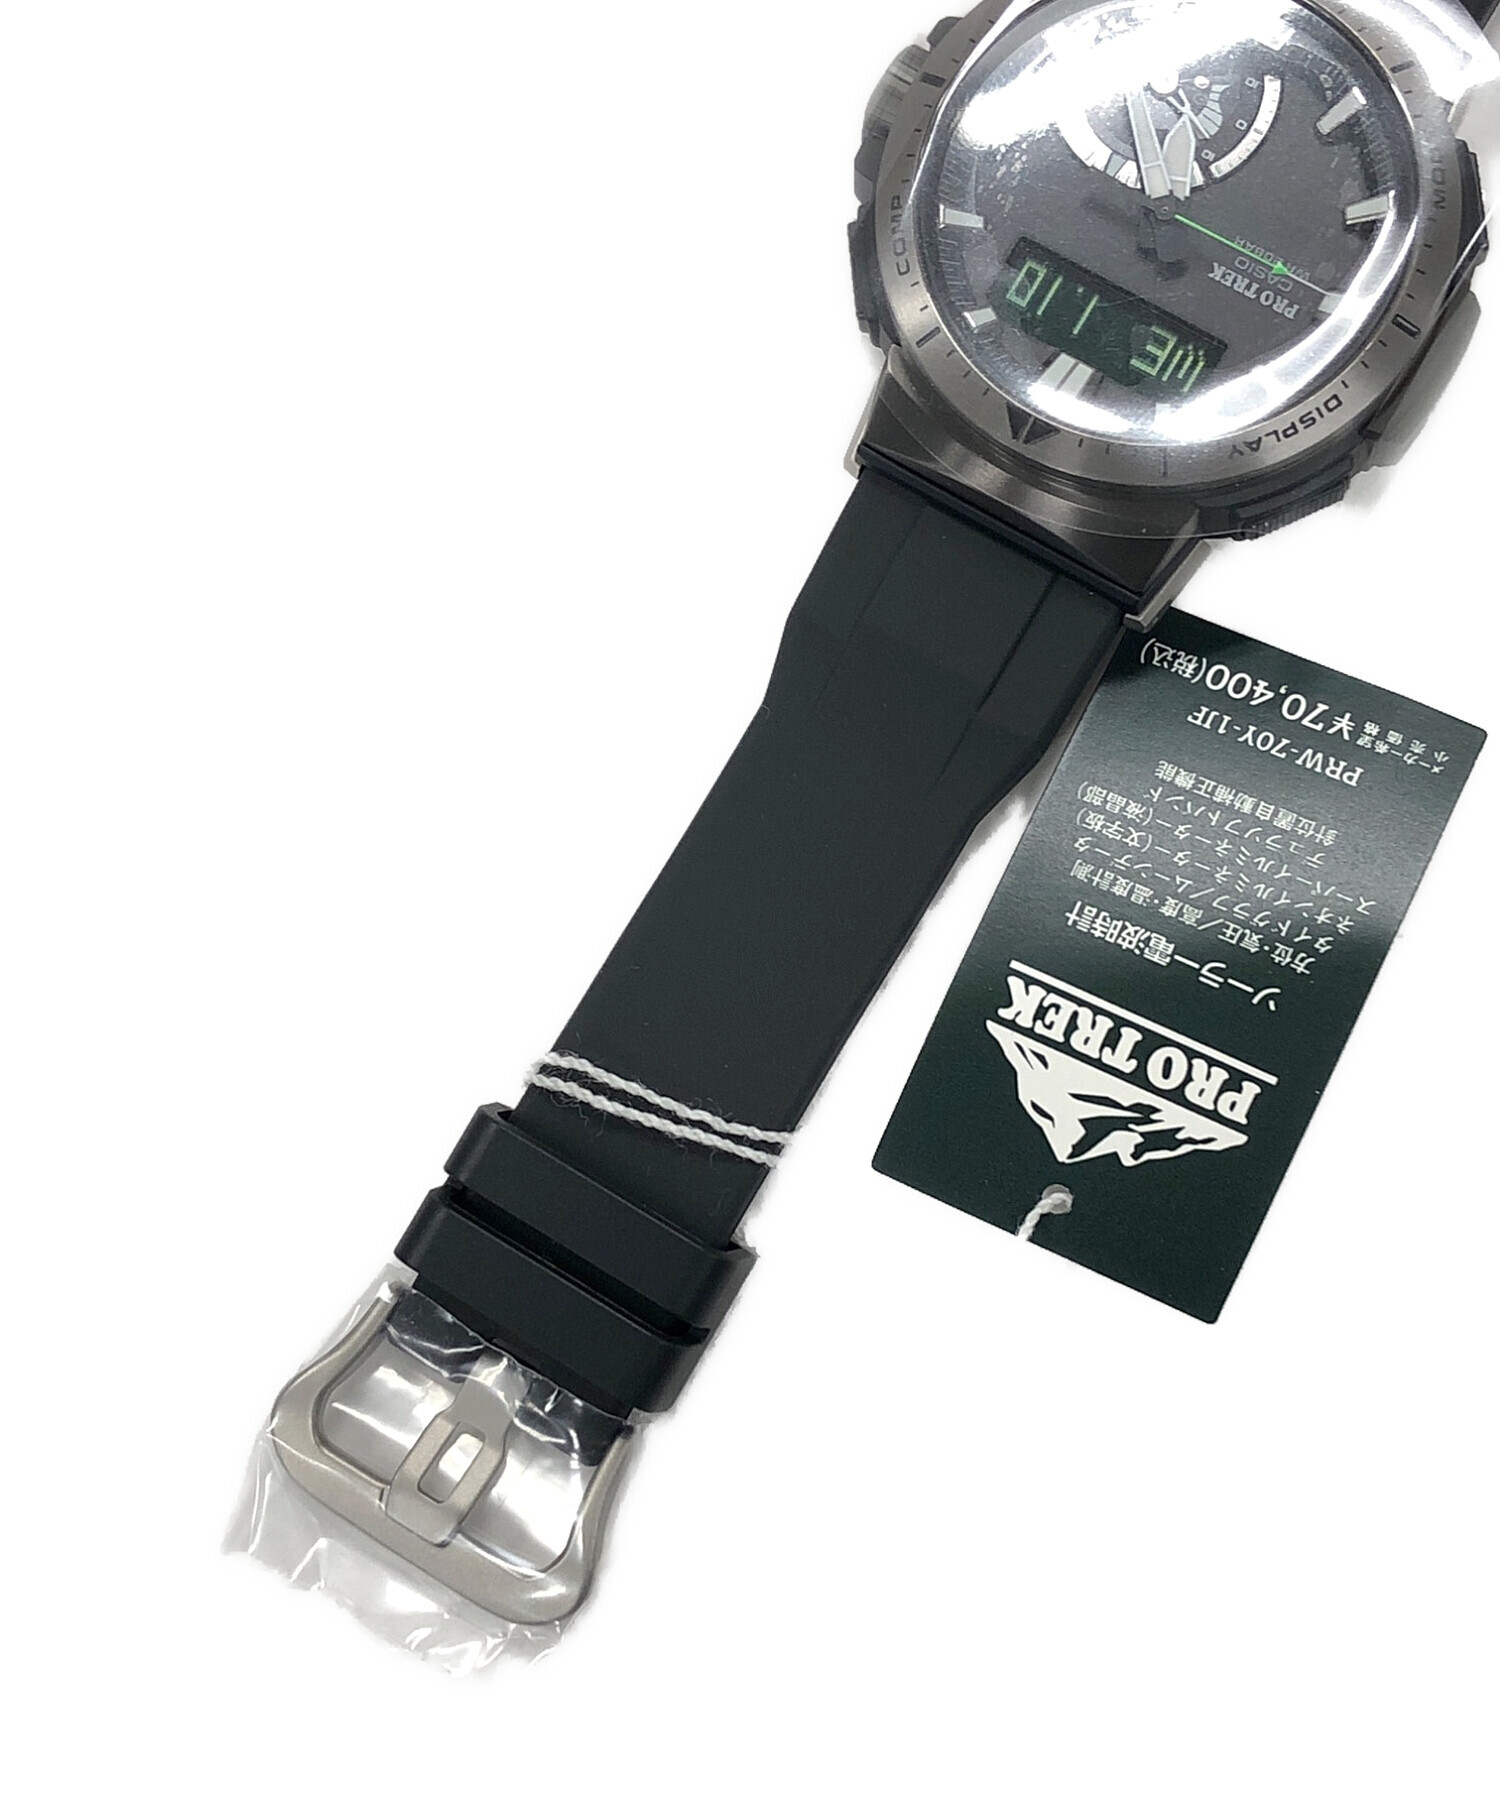 CASIO (カシオ) デジアナウォッチ ソーラー充電 PRO TREK(プロ トレック) マルチフィールドライン 腕時計  サイズ:実寸サイズにてご確認ください。 未使用品